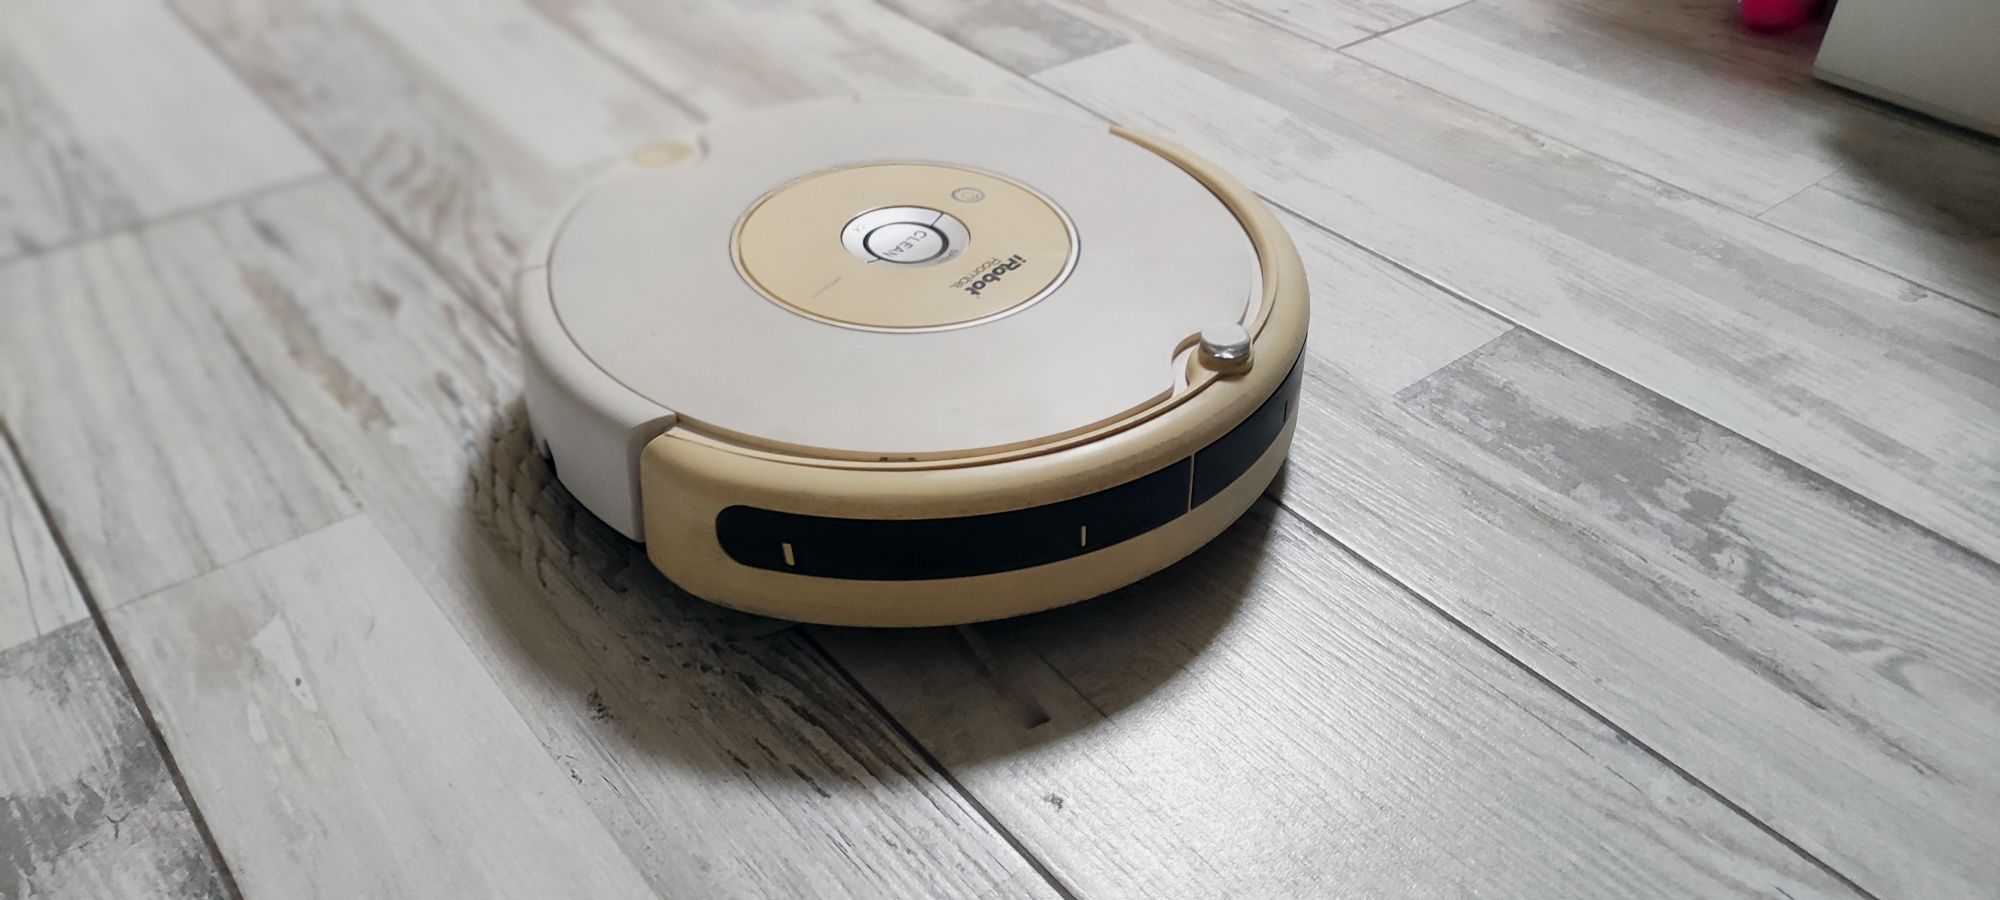 Продажа пылесос IRobot Roomba